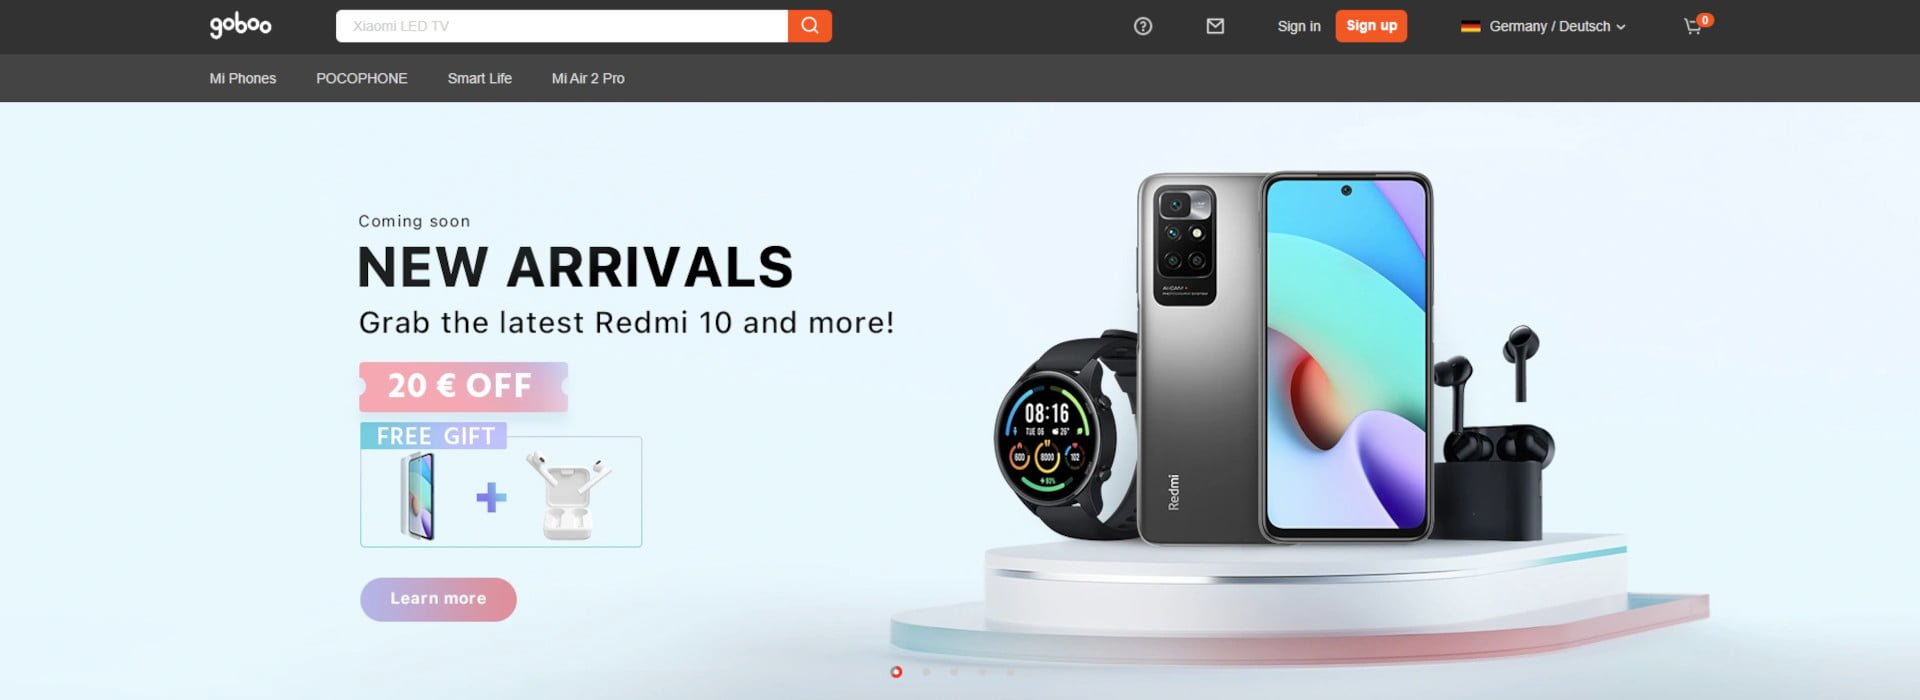 Goboo Xiaomi Shop Online kuponliste